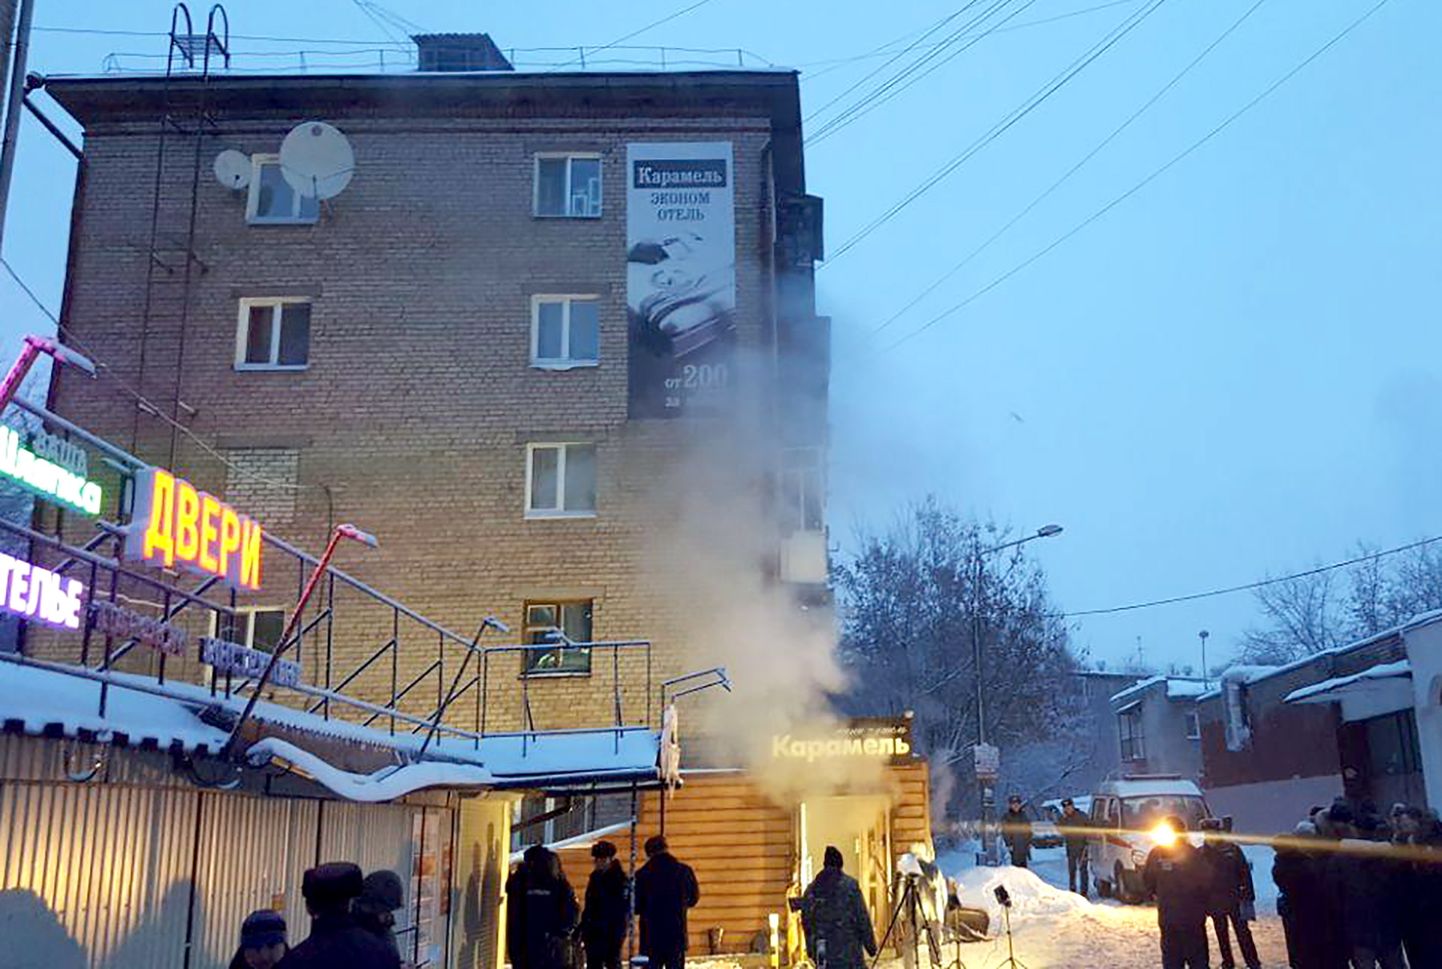 Permis asuvas väikehotellis Karamel lõhkes öösel kuumaveetoru.